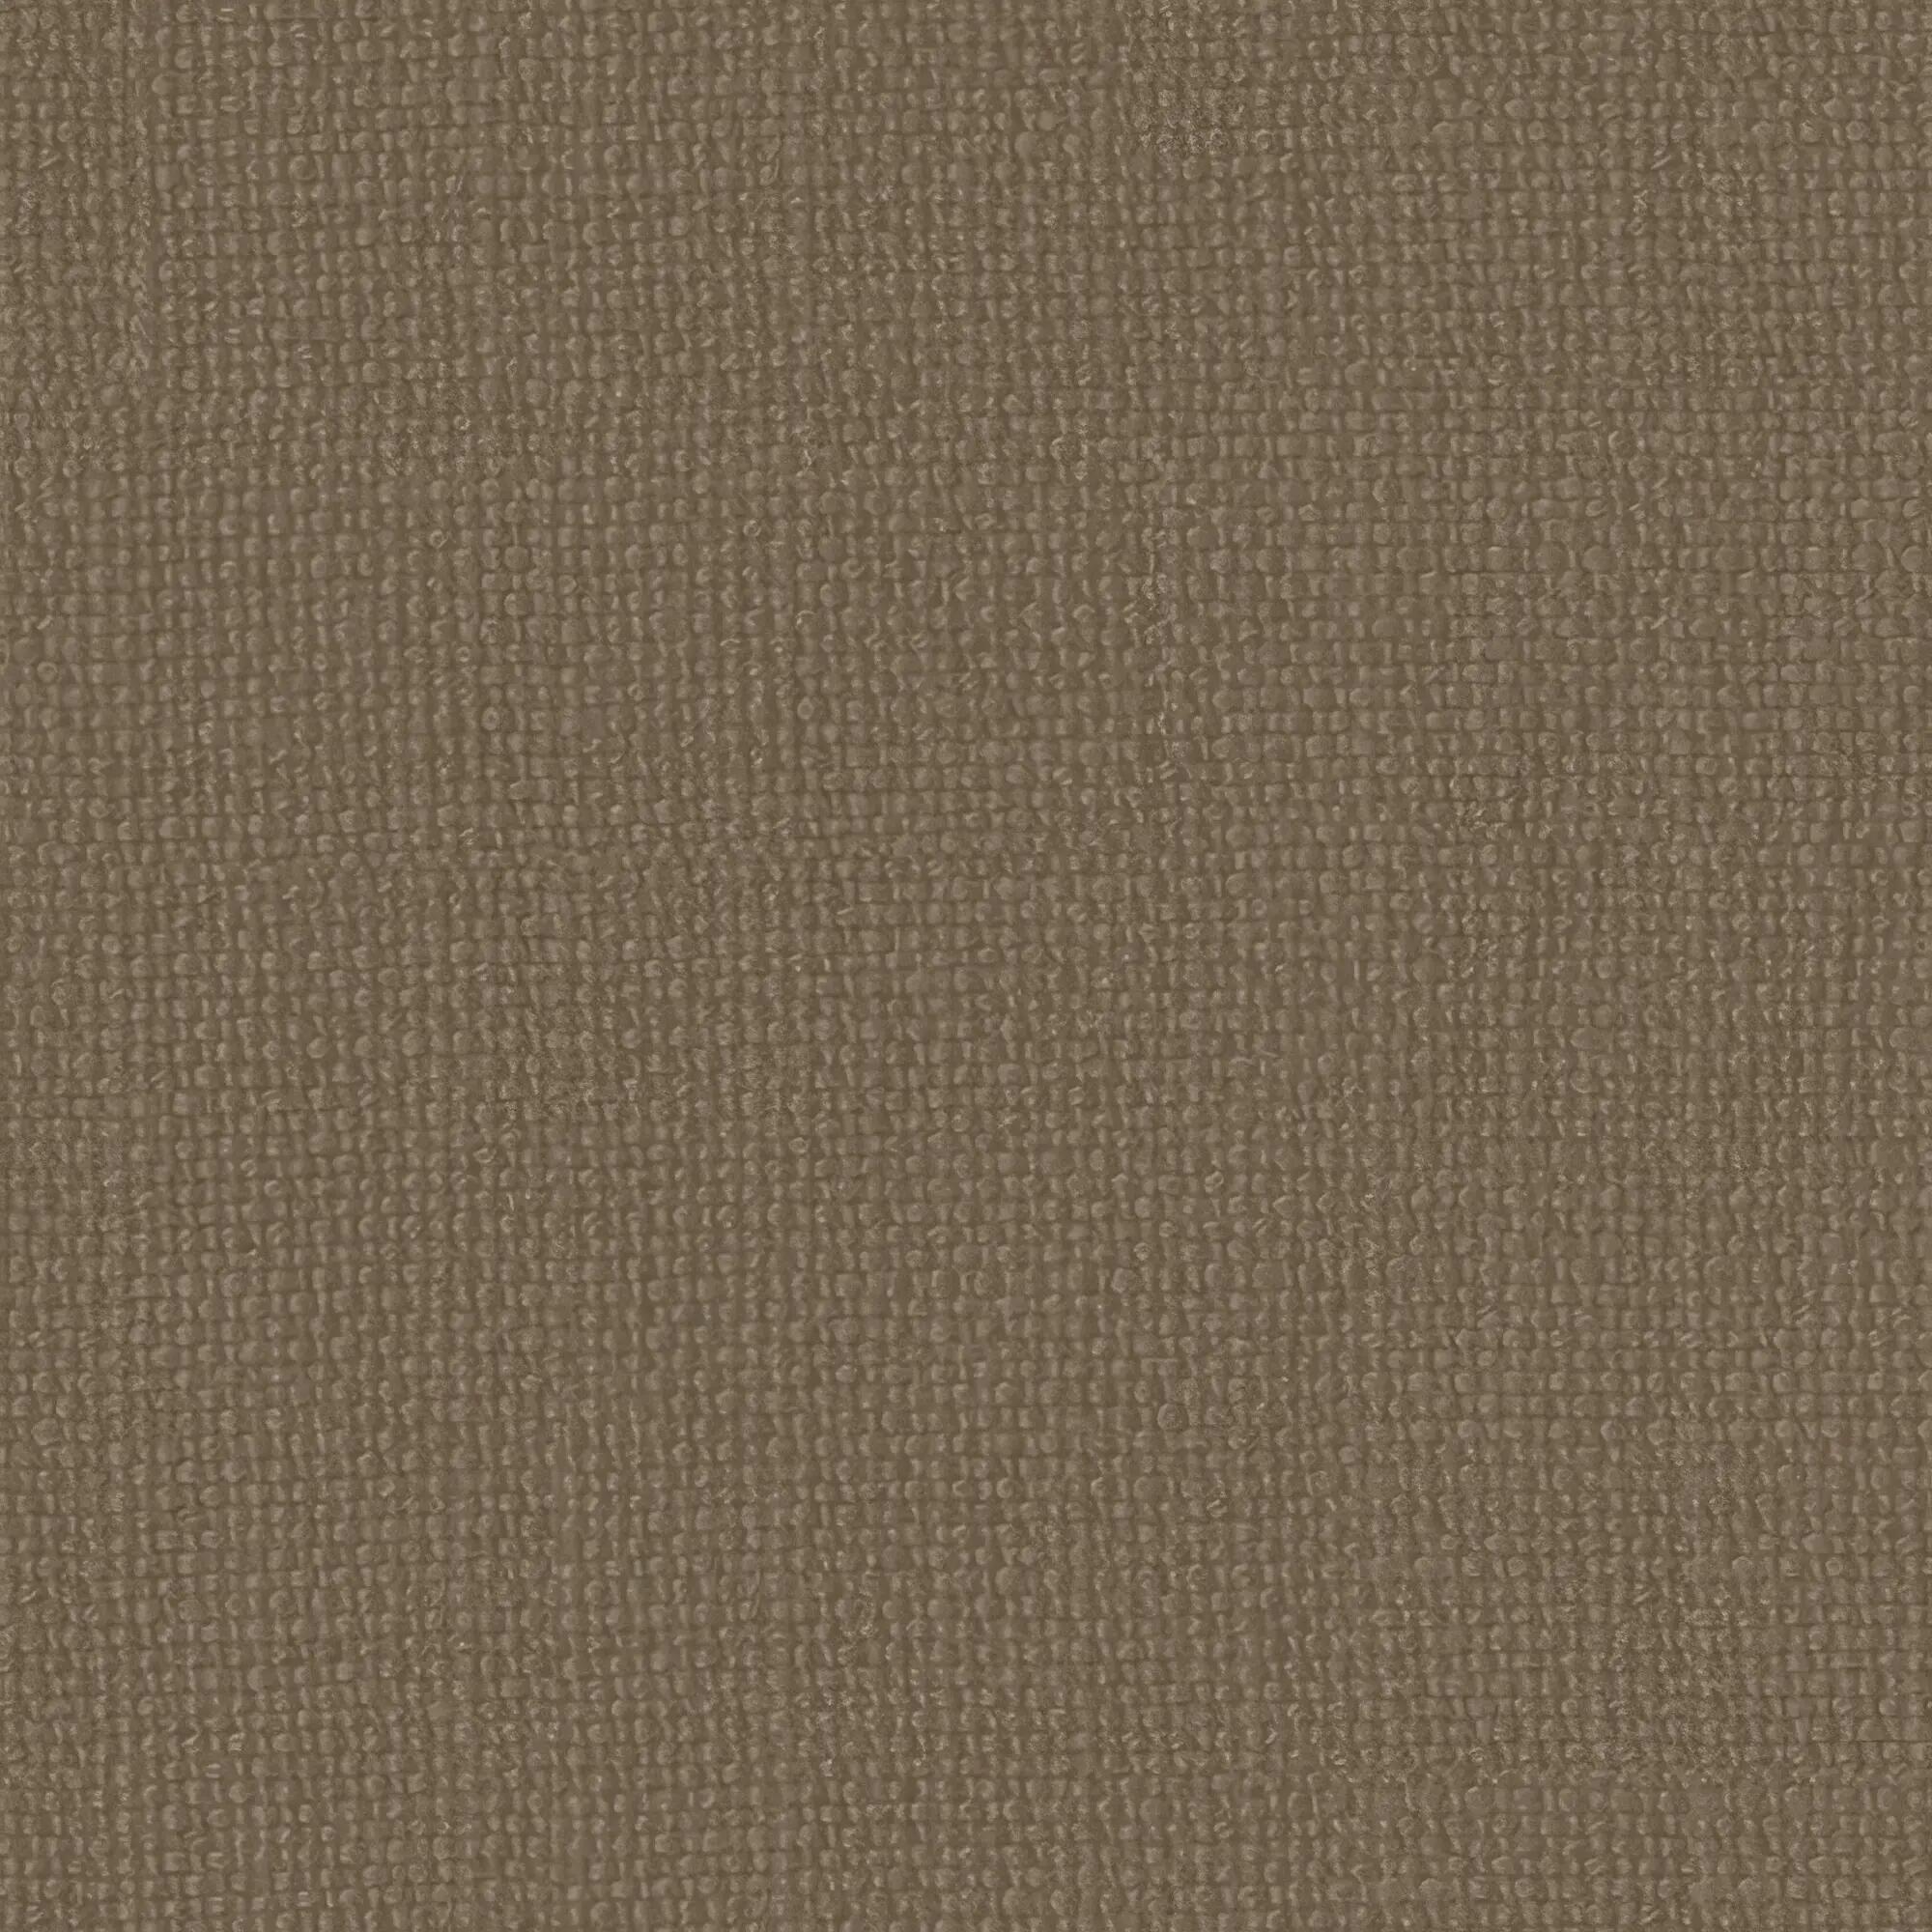 Tela al corte tapicería lino country gris ancho 140 cm